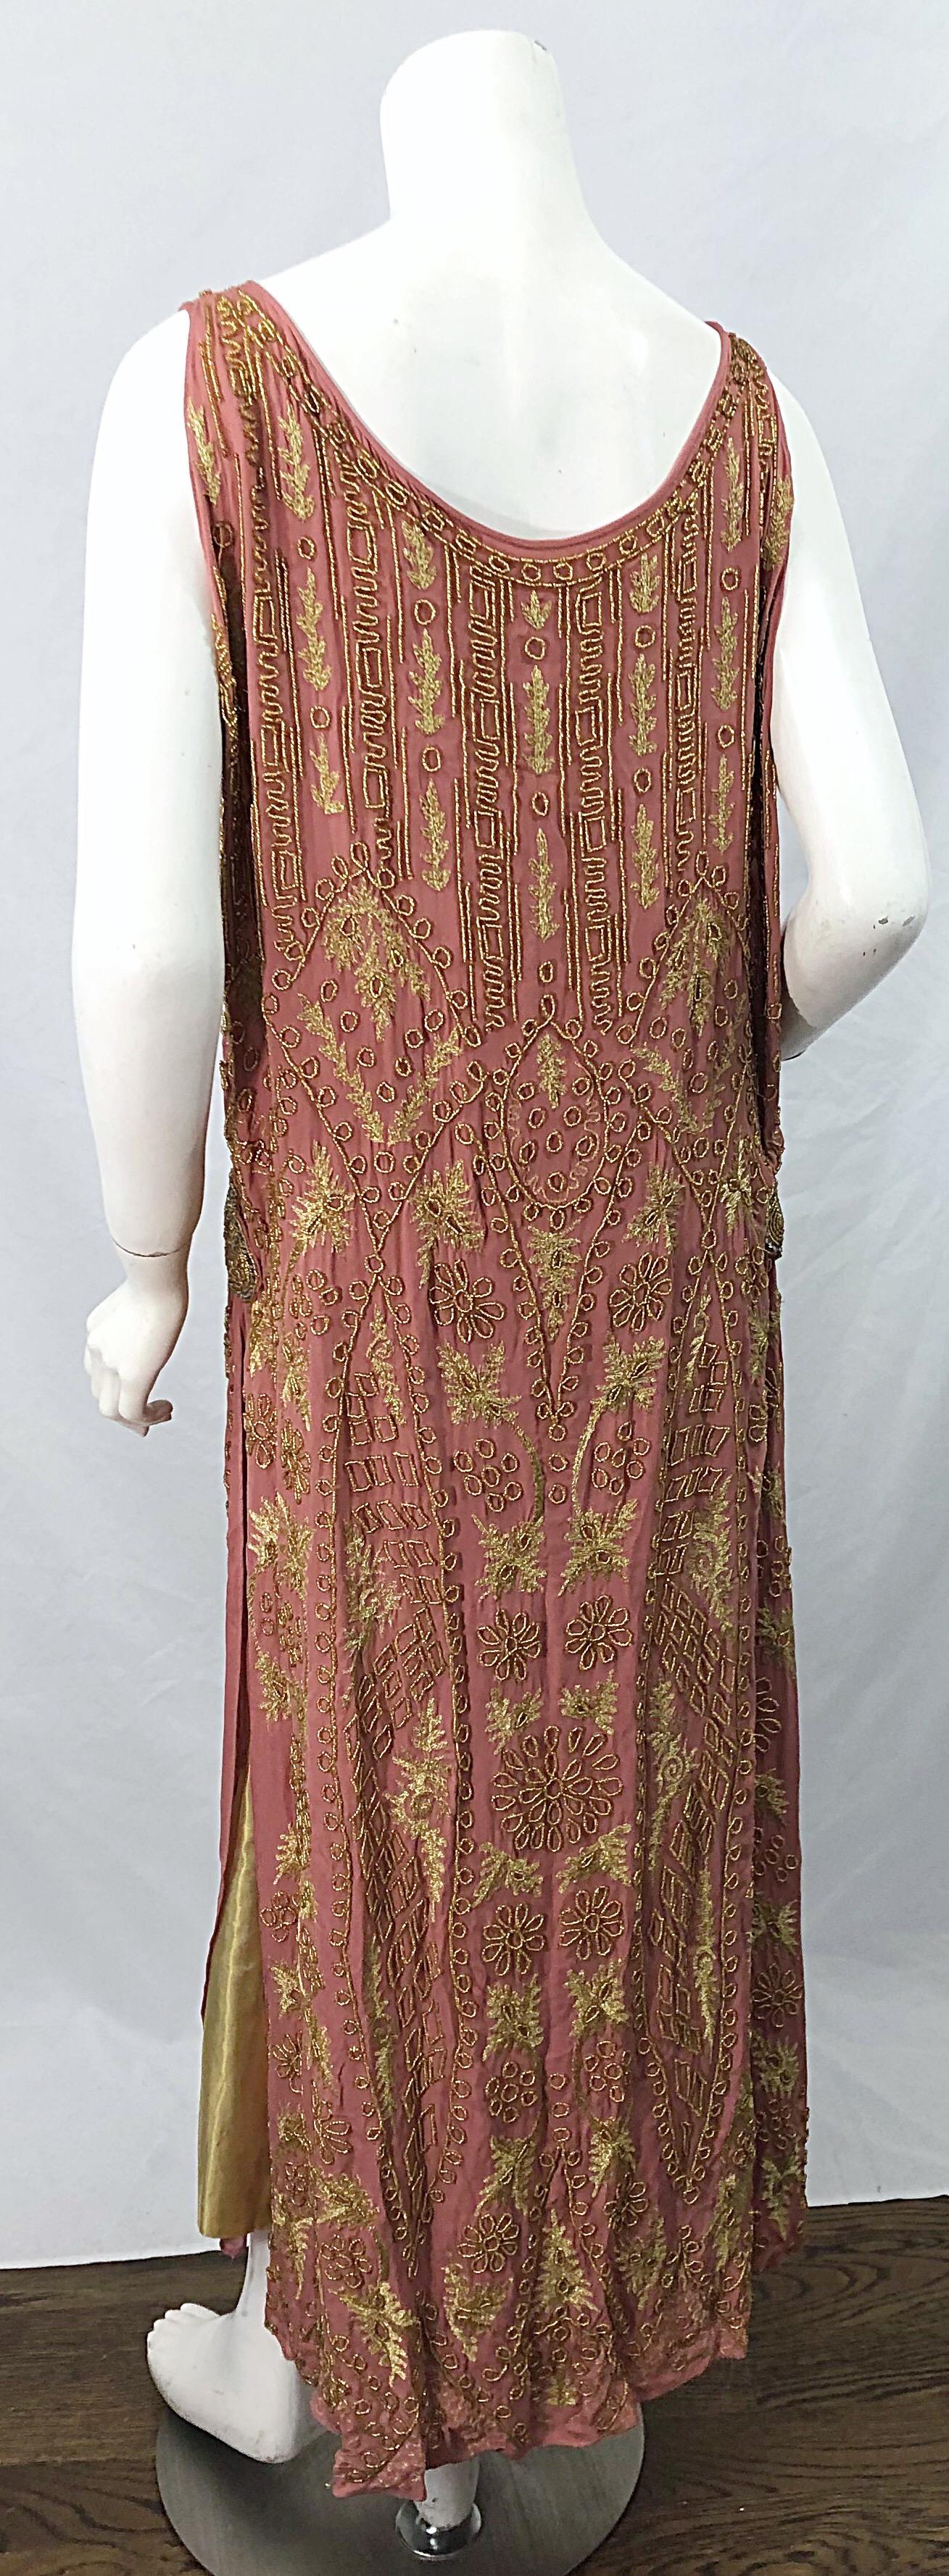 1920er Jahre Französische Couture Rosa + Gold Perlen Gatsby Roaring 20er Jahre Vintage Flapper Kleid 10